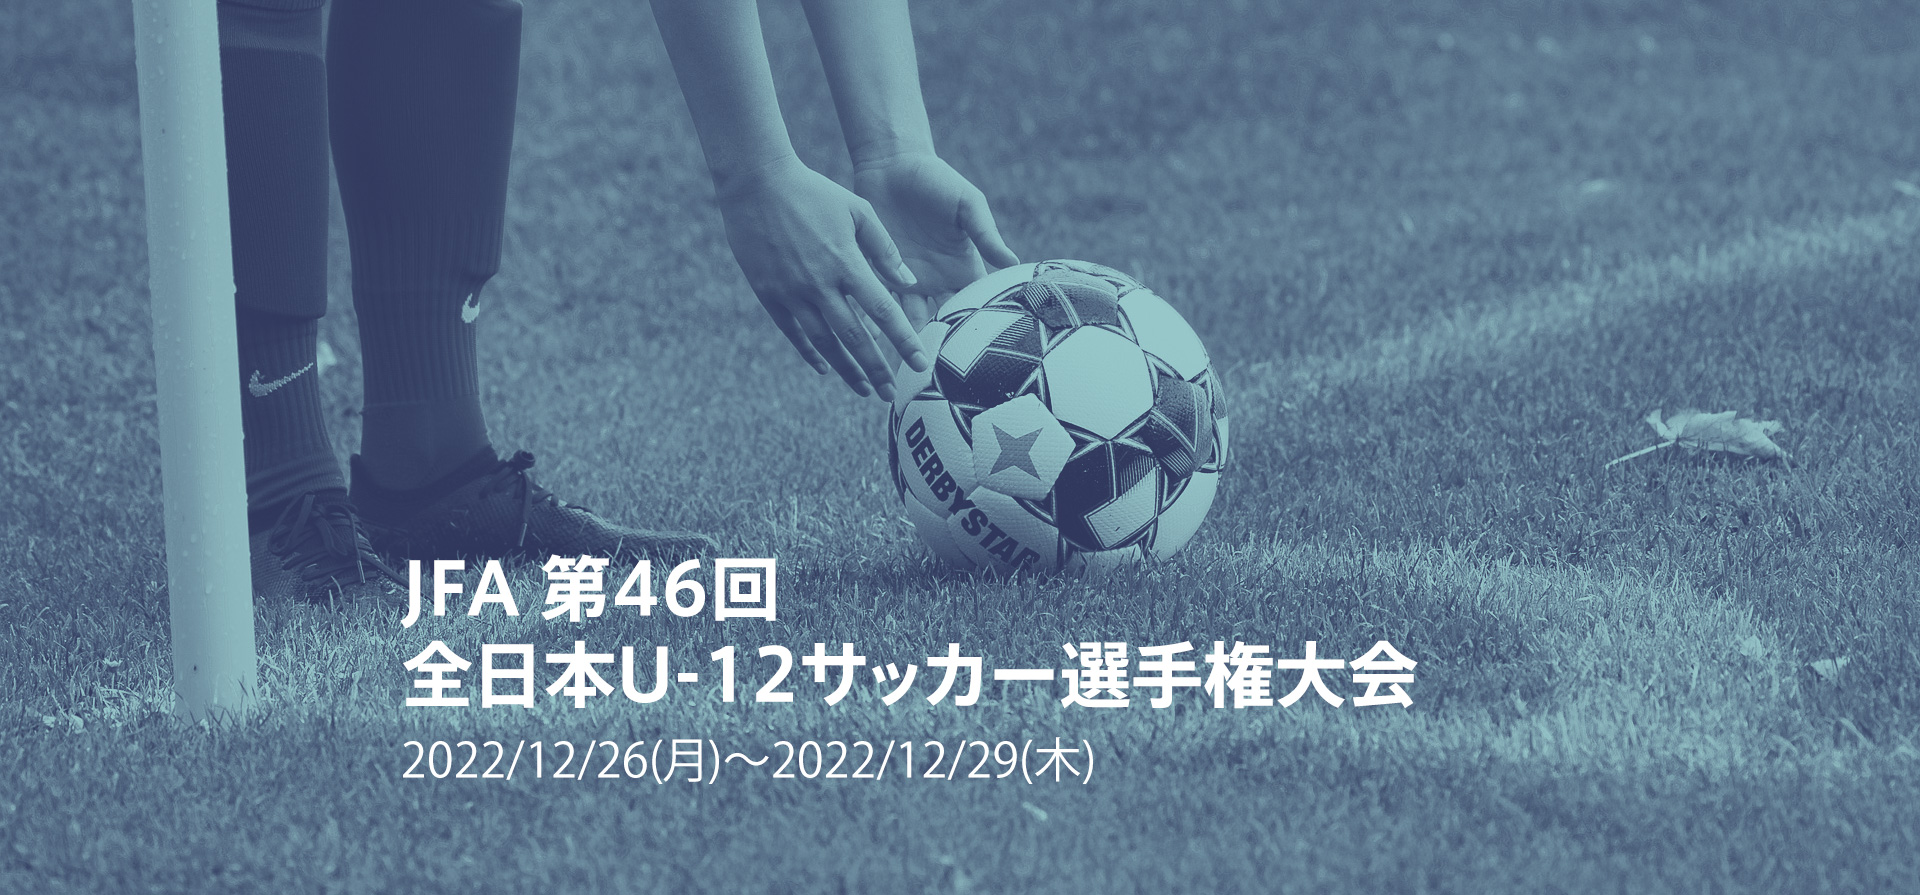 JFA 第46回全日本U-12サッカー選手権大会2022/12/26(月)～2022/12/29(木)